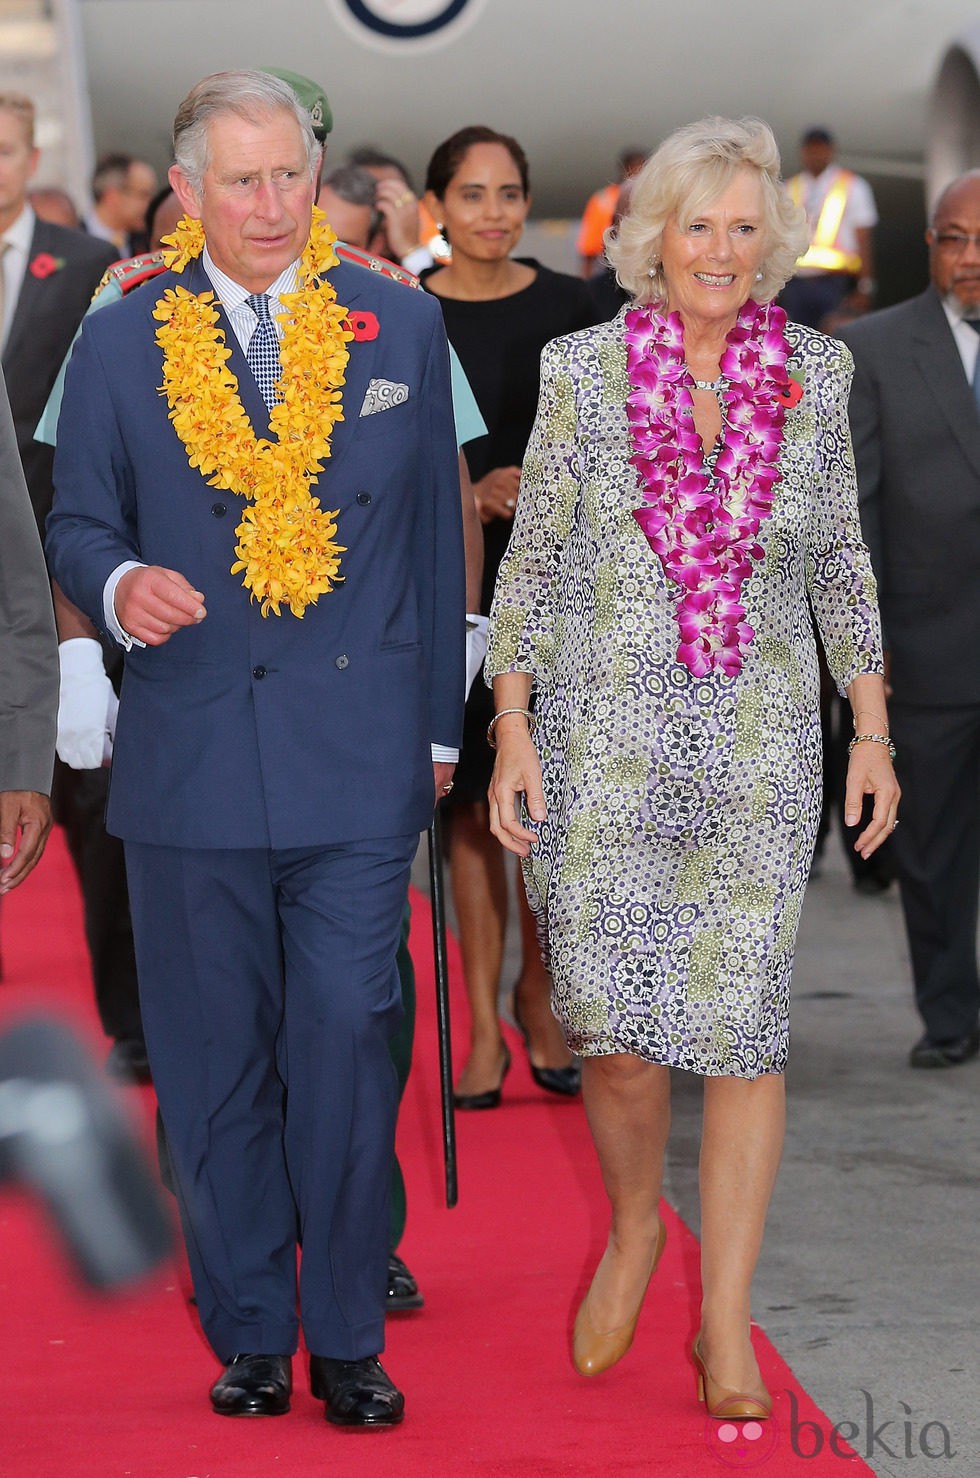 Carlos de Inglaterra y Camilla Parker a su llegada a Papúa Nueva Guinea